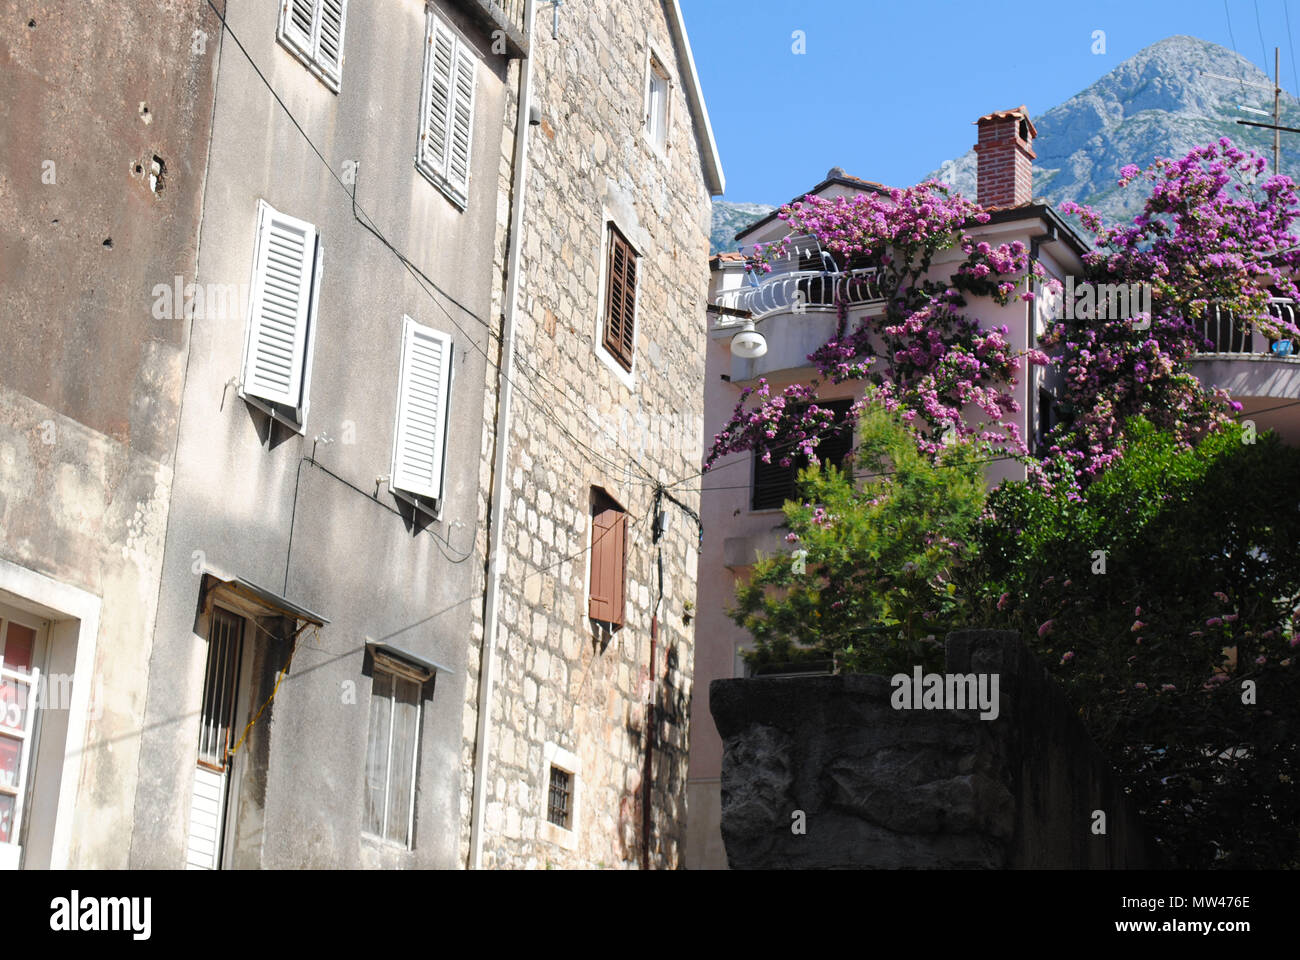 Typical Dalmatian houses in Makarska, Croatia. Stock Photo